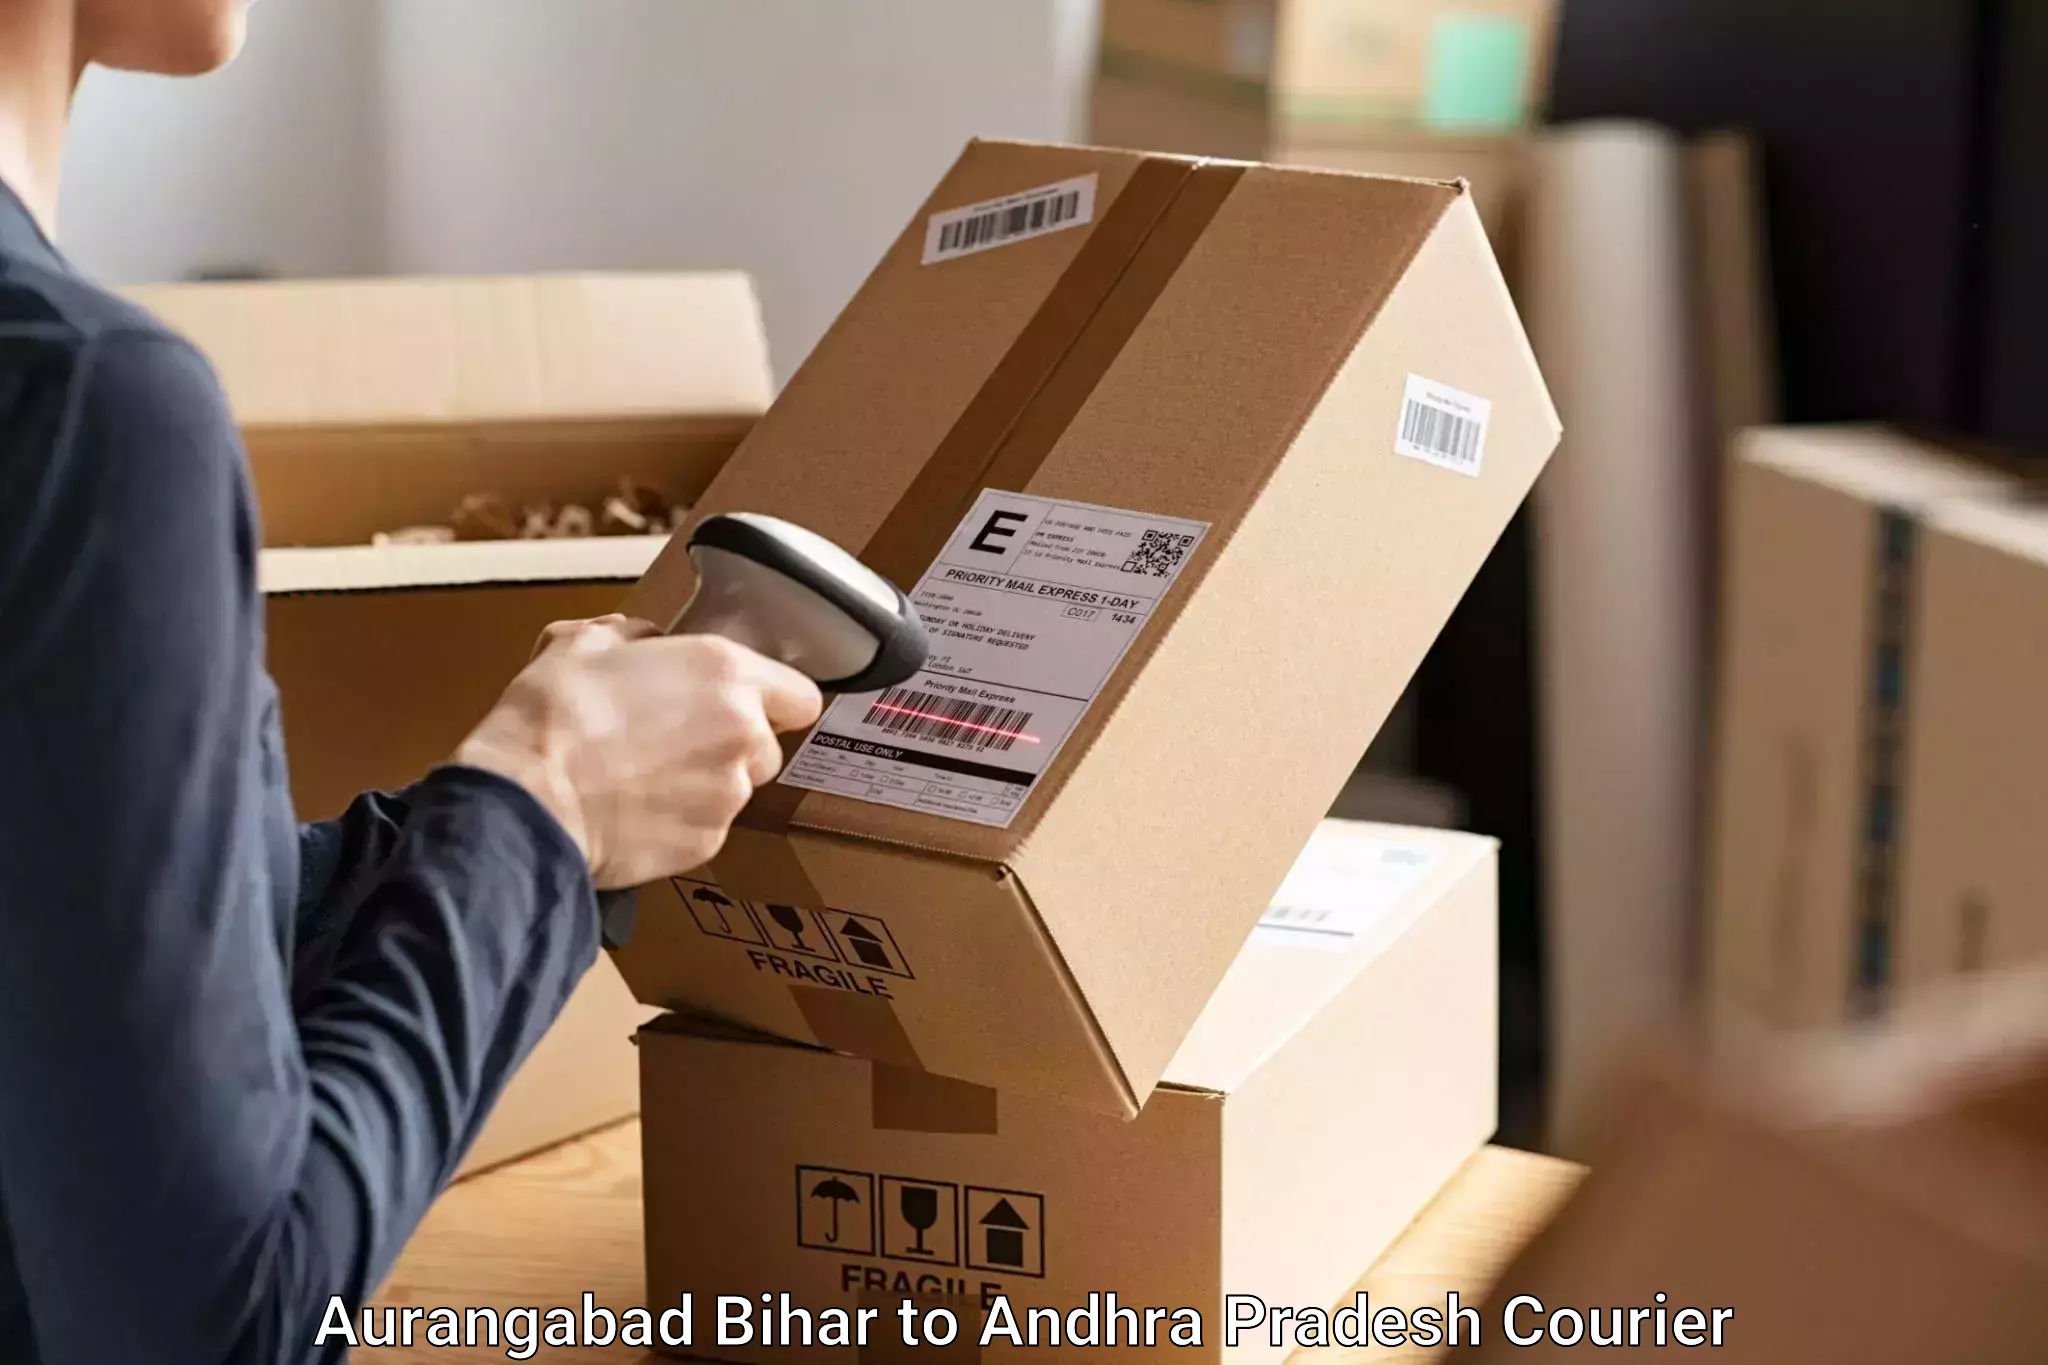 Baggage relocation service Aurangabad Bihar to Achampet Palnadu